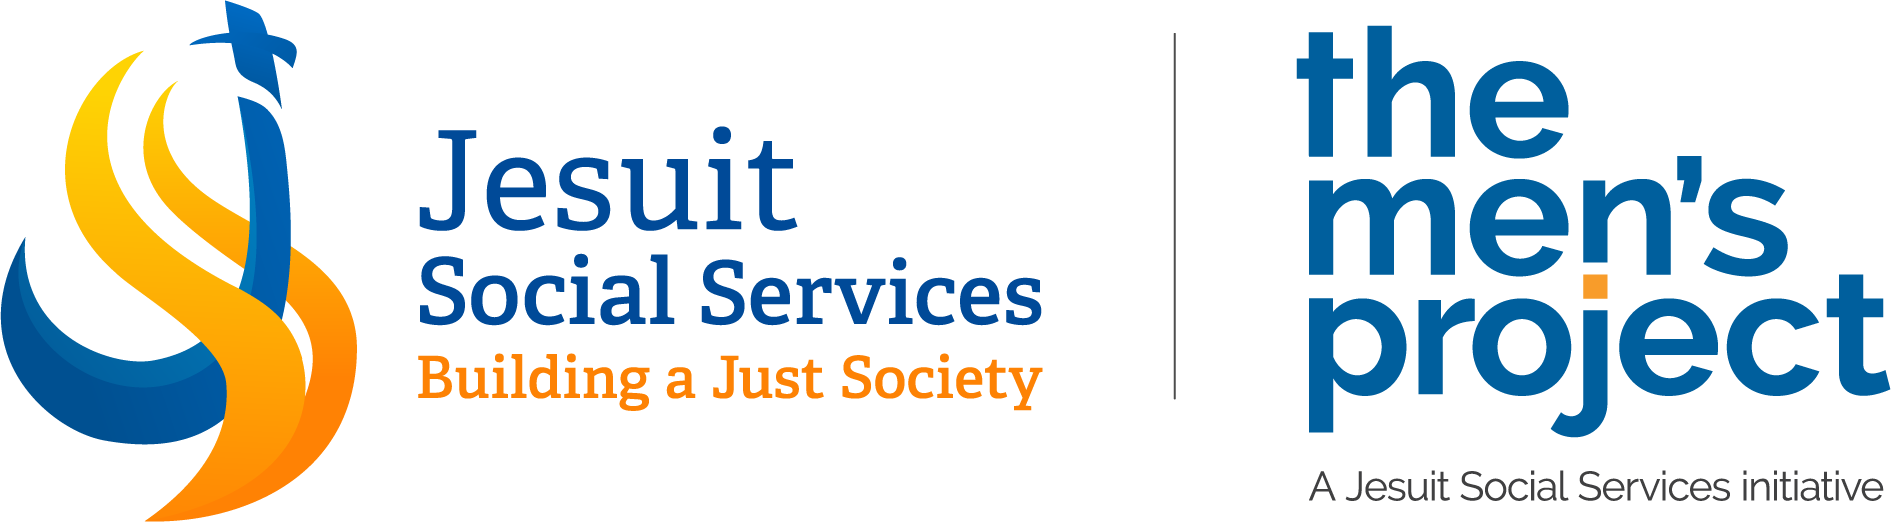 Jesuit Social Services Logo.png